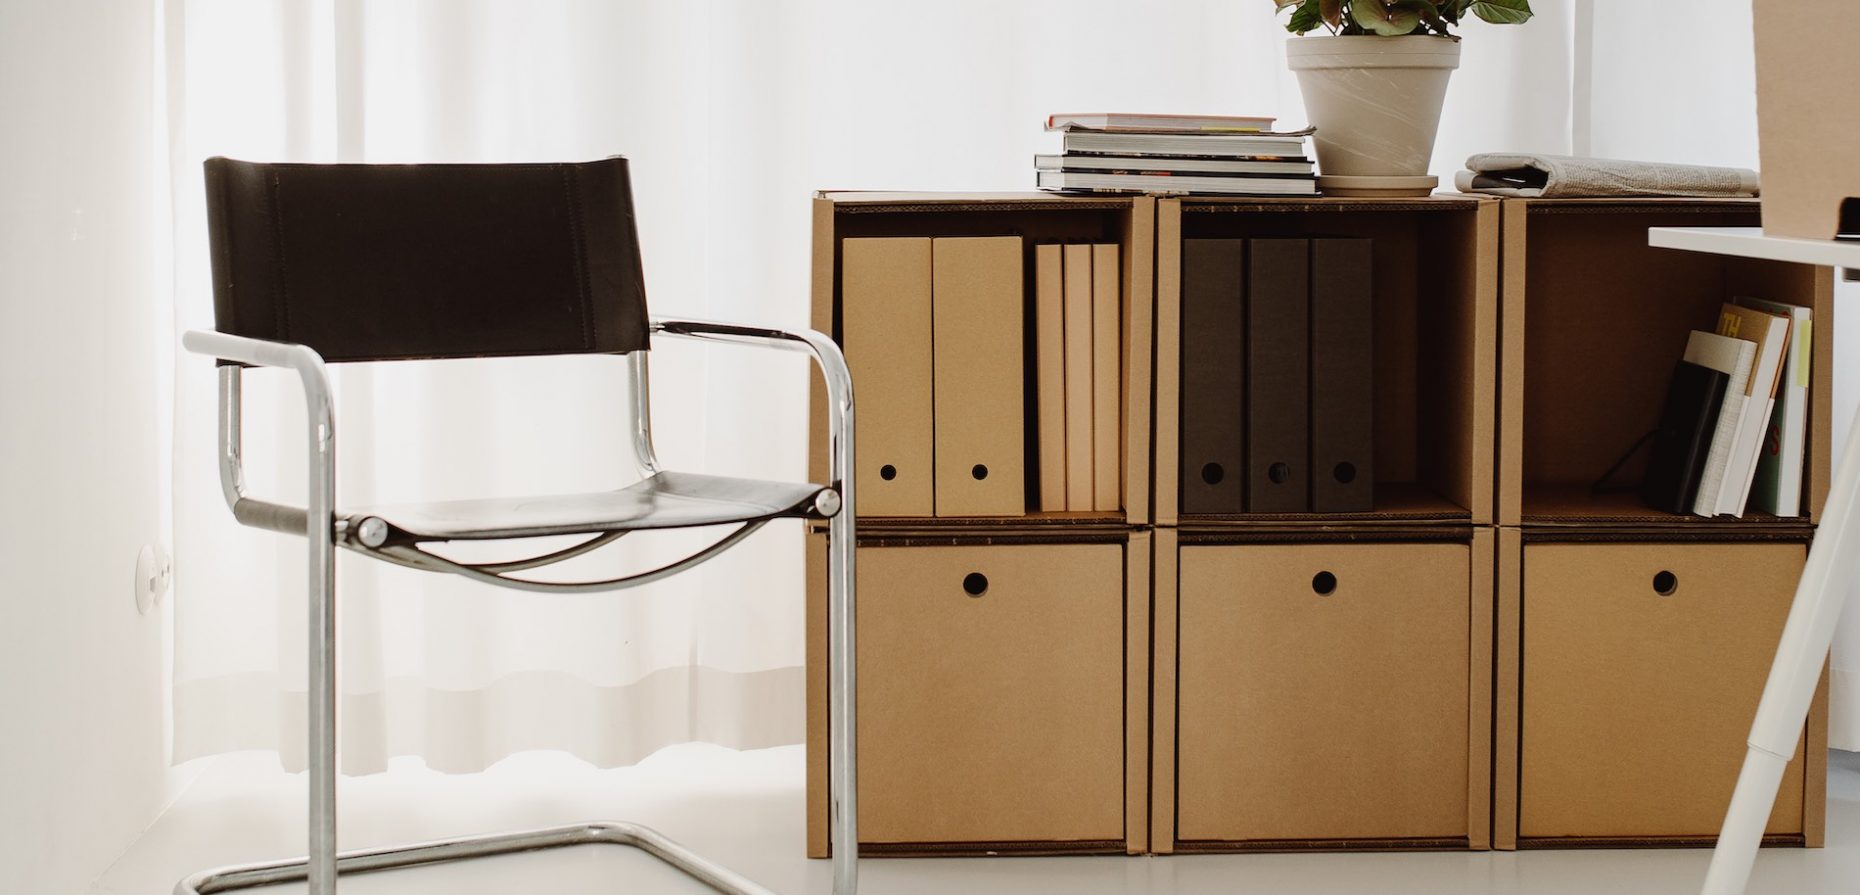 ROOM IN A BOX bietet nachhaltige Alternativen zu den ubiquitären schwedischen Bausatzmöbeln. Sie sind aus Karton, aber keineswegs von Pappe. Das Bild zeigt ein stabiles und formschönes Regal. Foto: © ROOM IN A BOX